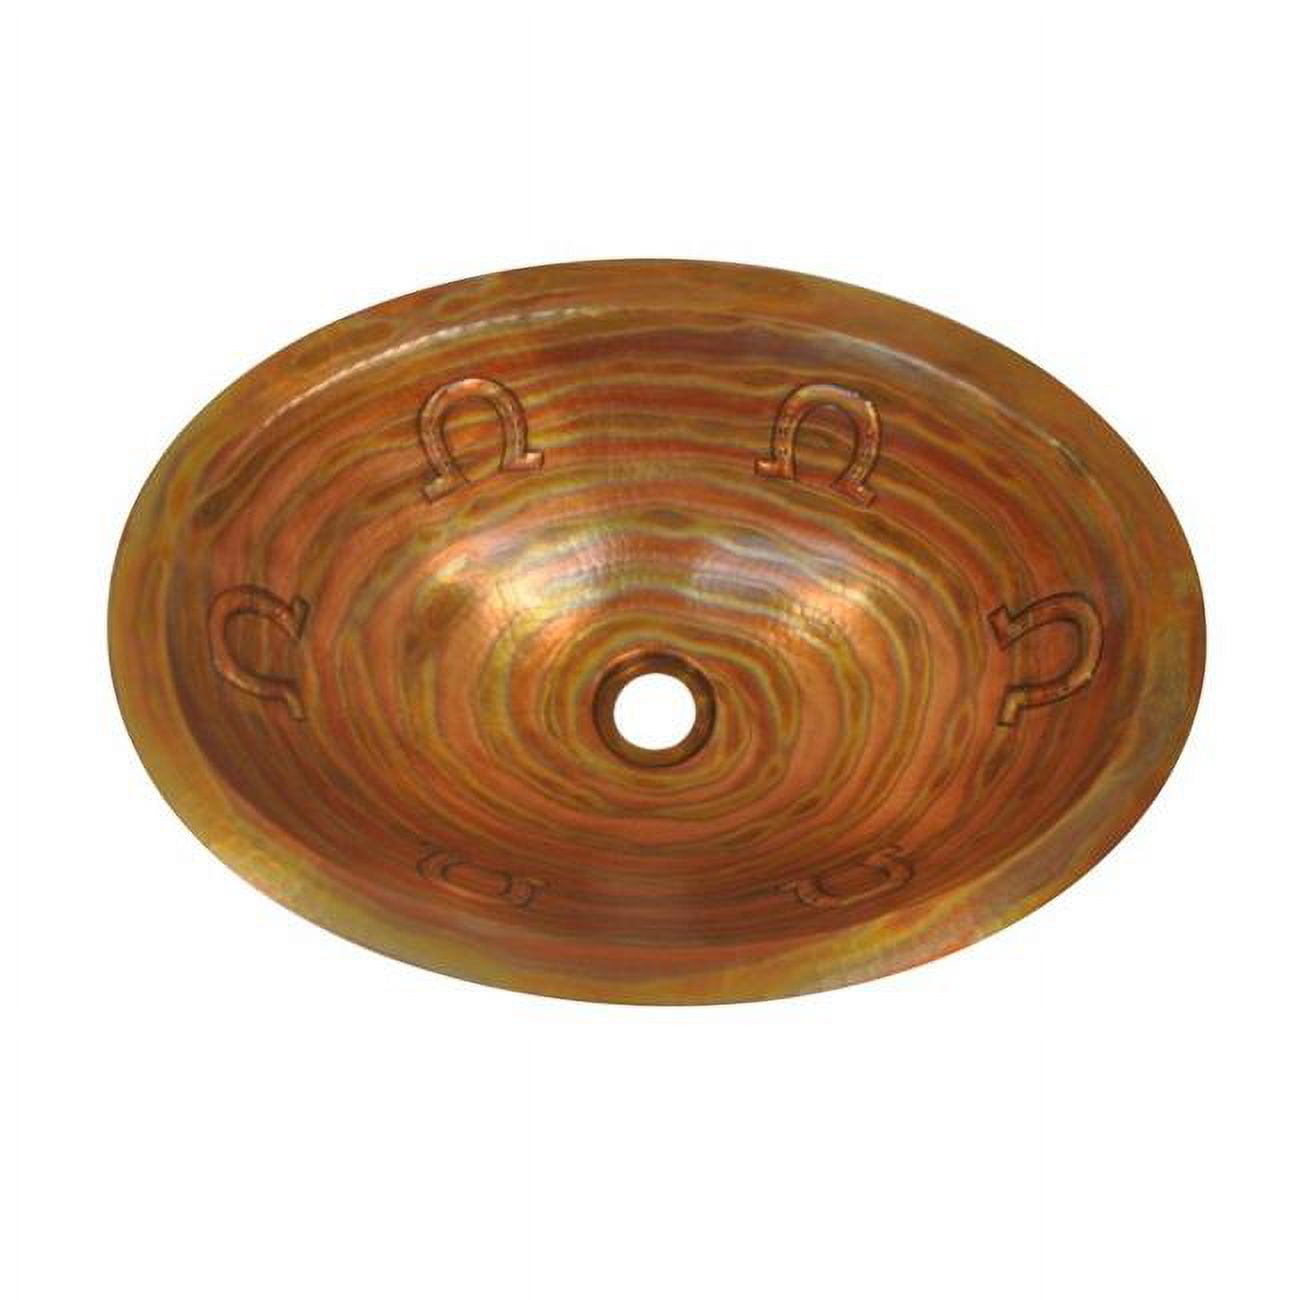 Cos-hs-19-fl-ma Copper Oval Bath Sink, Matte - Horseshoe Design - 6 X 14 X 19 In.